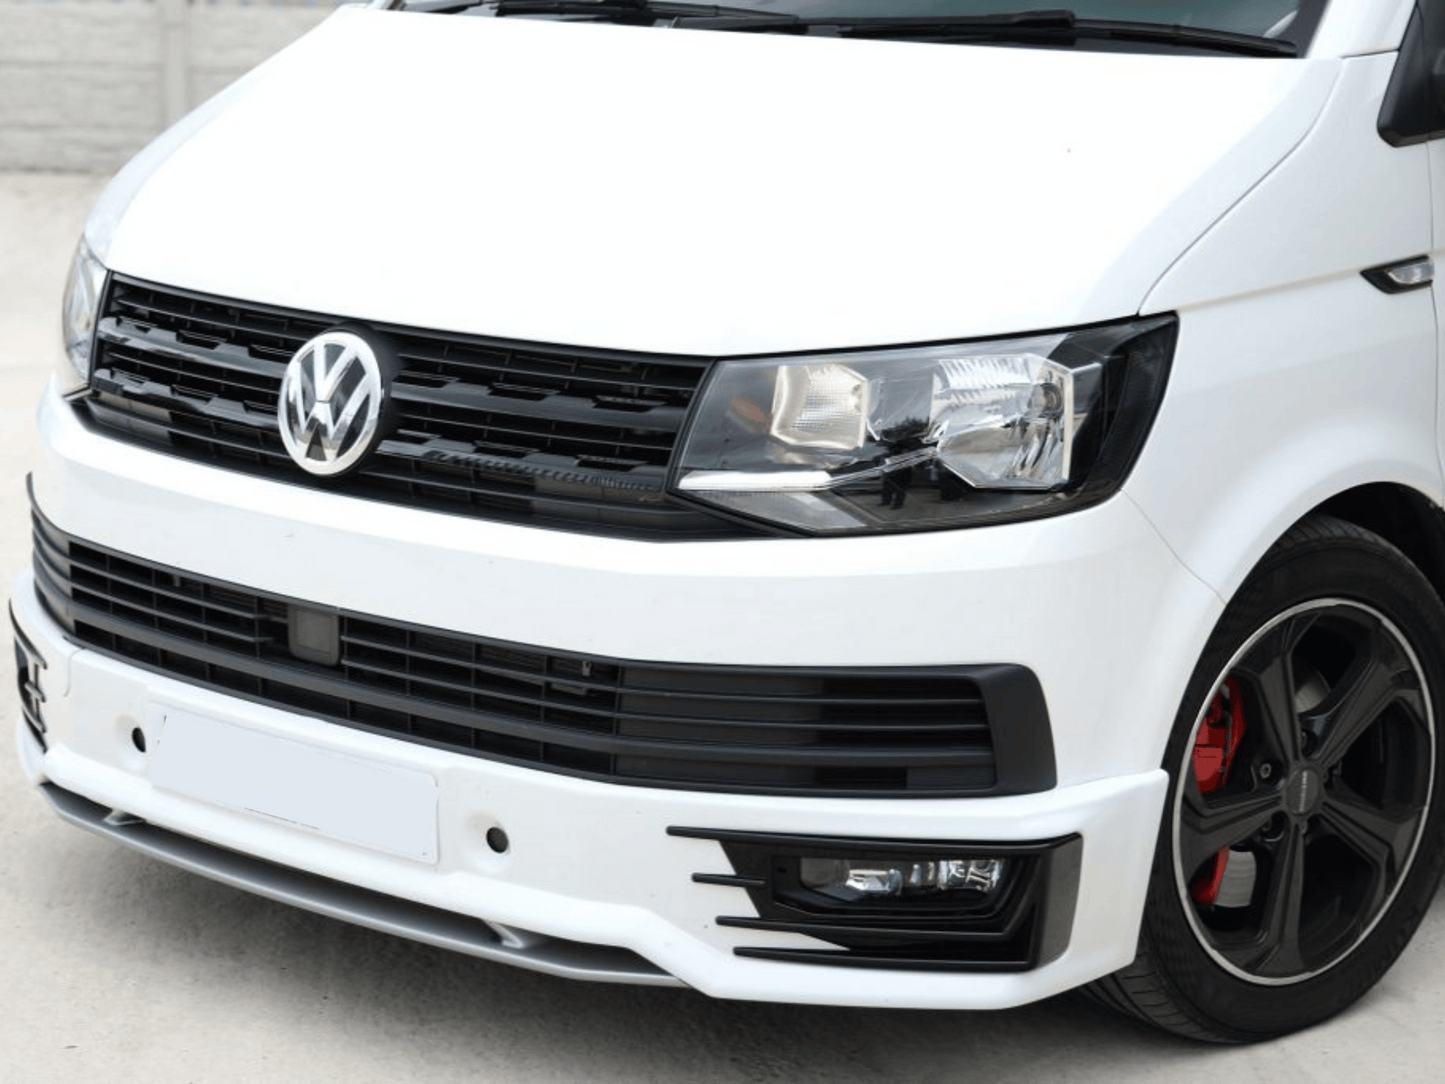 VW Transporter T6 Front Grille Trims (4Pcs) - Matte Black